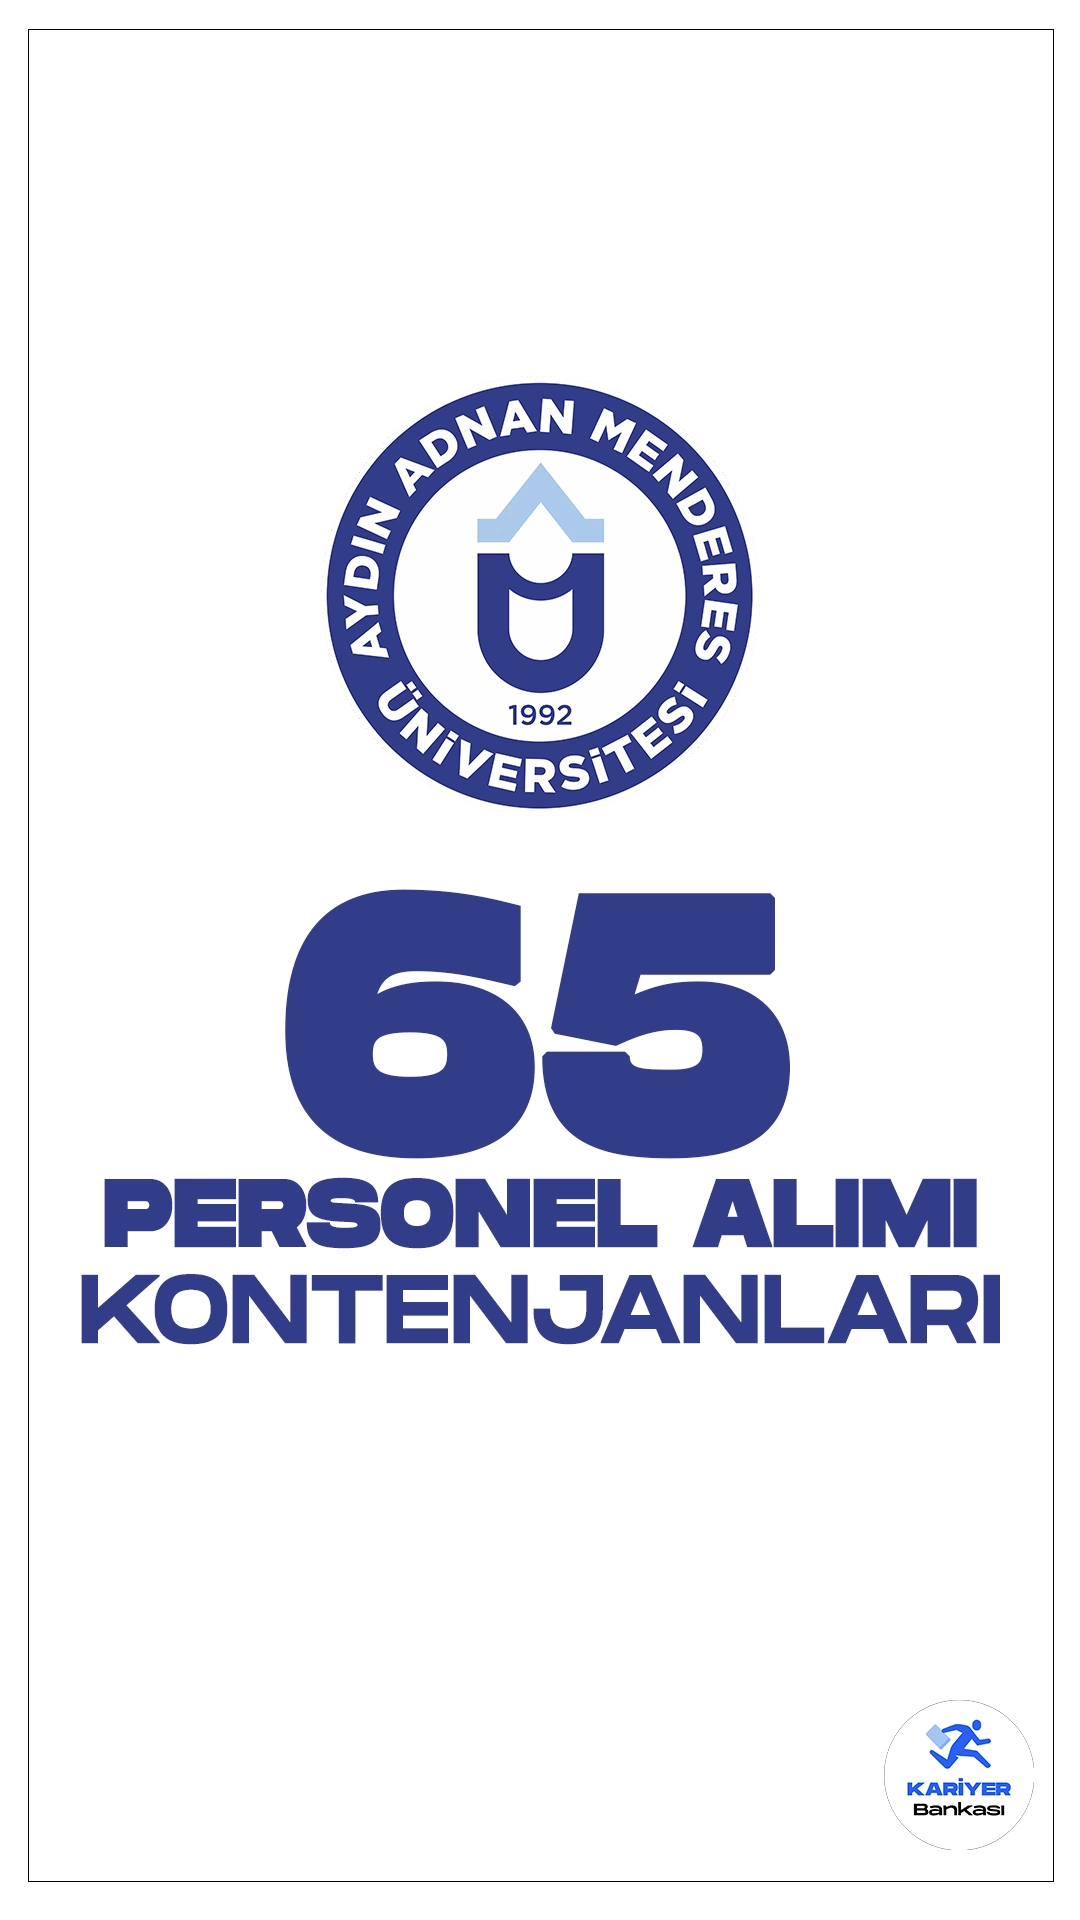 Aydın Adnan Menderes Üniversitesi (ADÜ) personel alımı için başvuru işlemleri devam ediyor. Kontenjan dağılımı ve başvuru şartlarına dair tüm detaylar Kariyerbankasi.net'in bu haberinde.